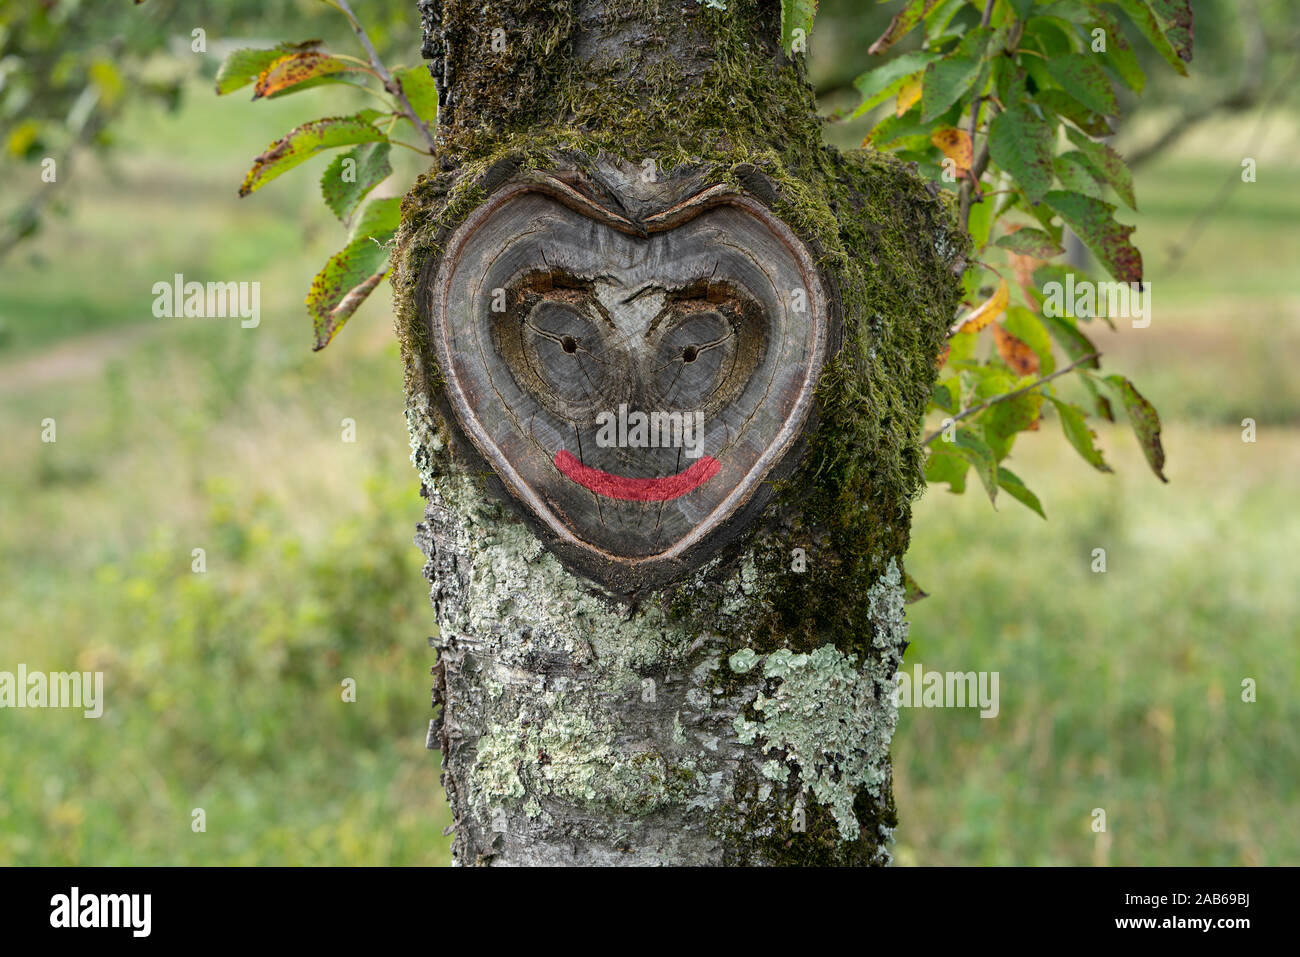 Bella cuore naturale con volto sorridente nel vecchio di corteccia di albero con MOSS e lascia nel verde della natura Foto Stock